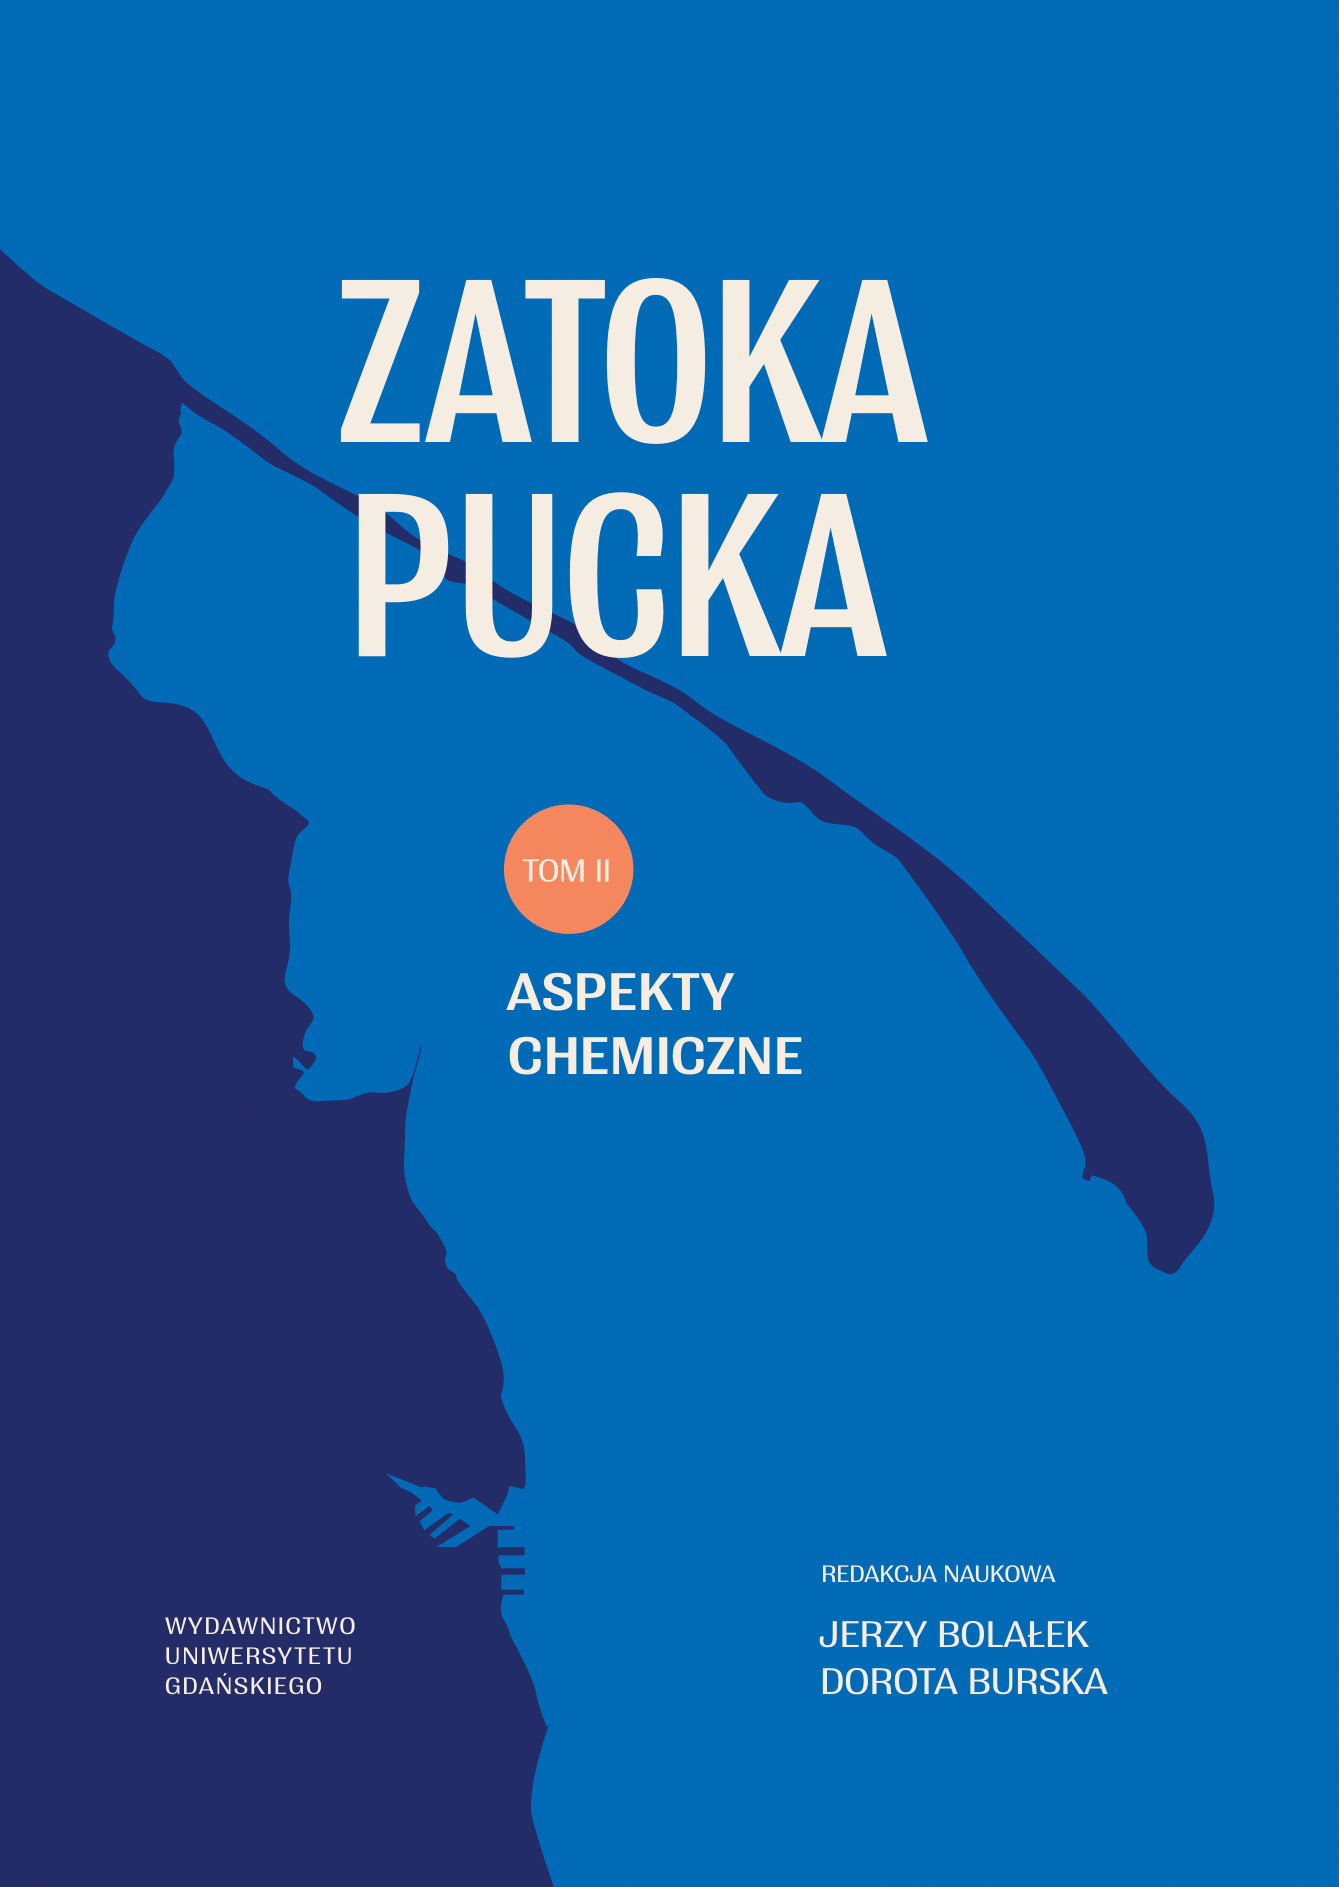 ZATOKA_PUCKA_22122021_T2-1 (2)